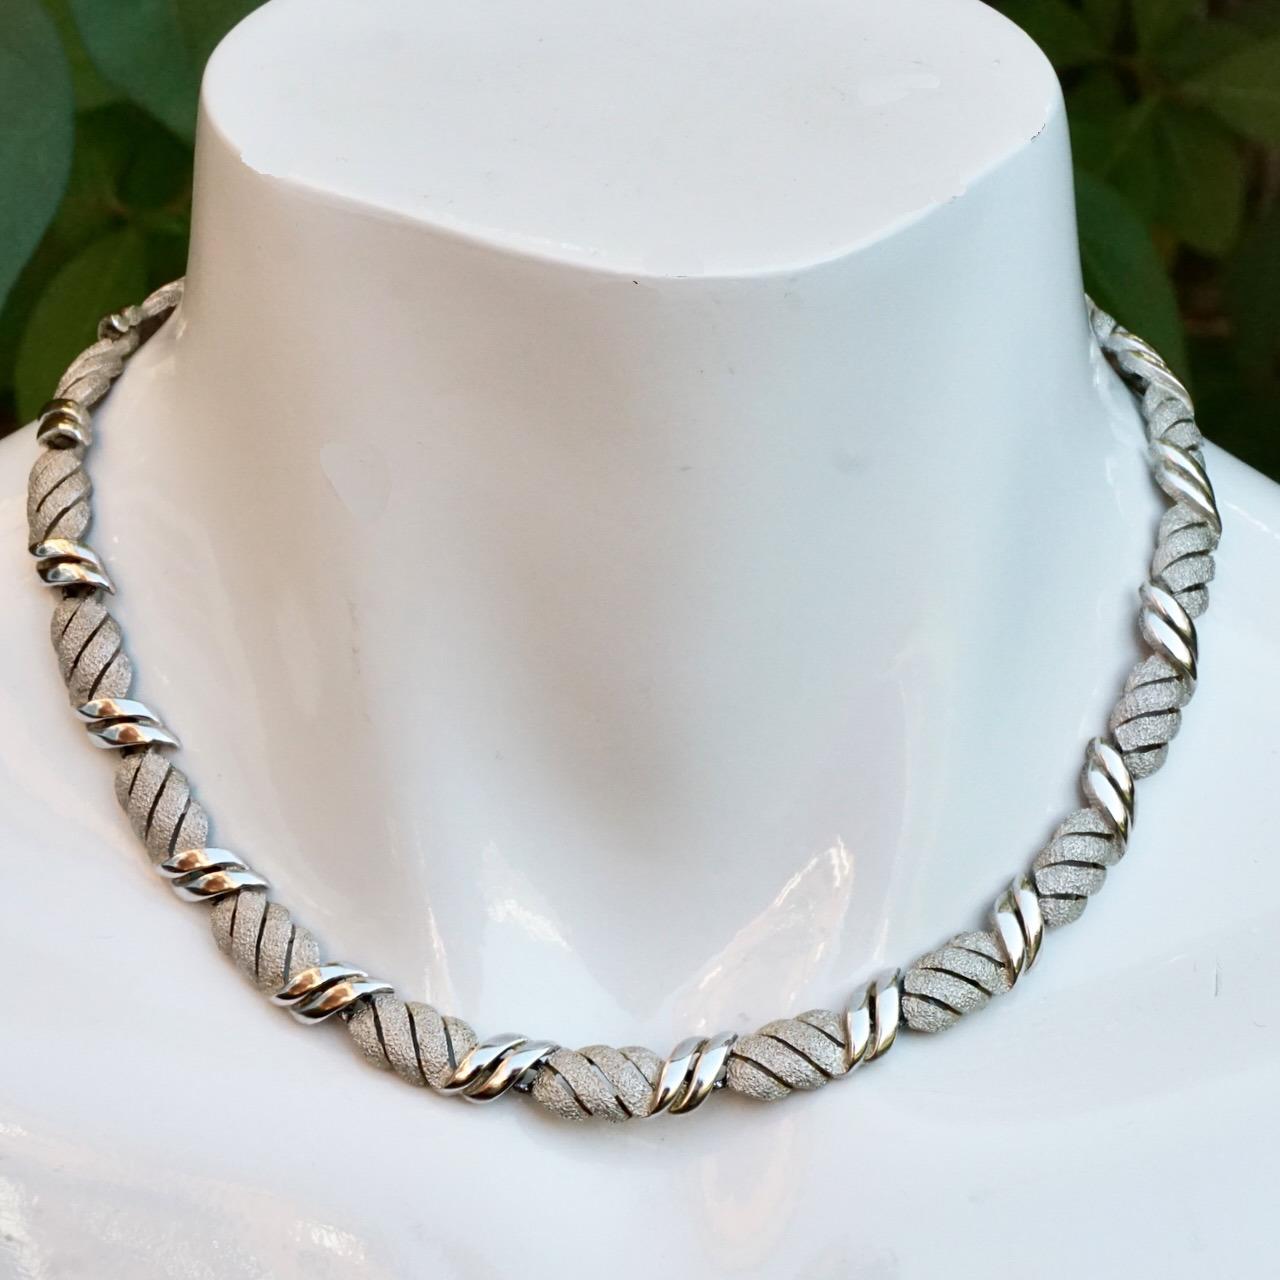 Magnifique collier à maillons en métal argenté brossé et brillant de Trifari. Longueur 39,7 cm / 15,6 pouces par largeur 8 mm / .3 pouce. Le collier est doté d'un fermoir à double maillon, ce qui permet de retirer un maillon pour raccourcir le